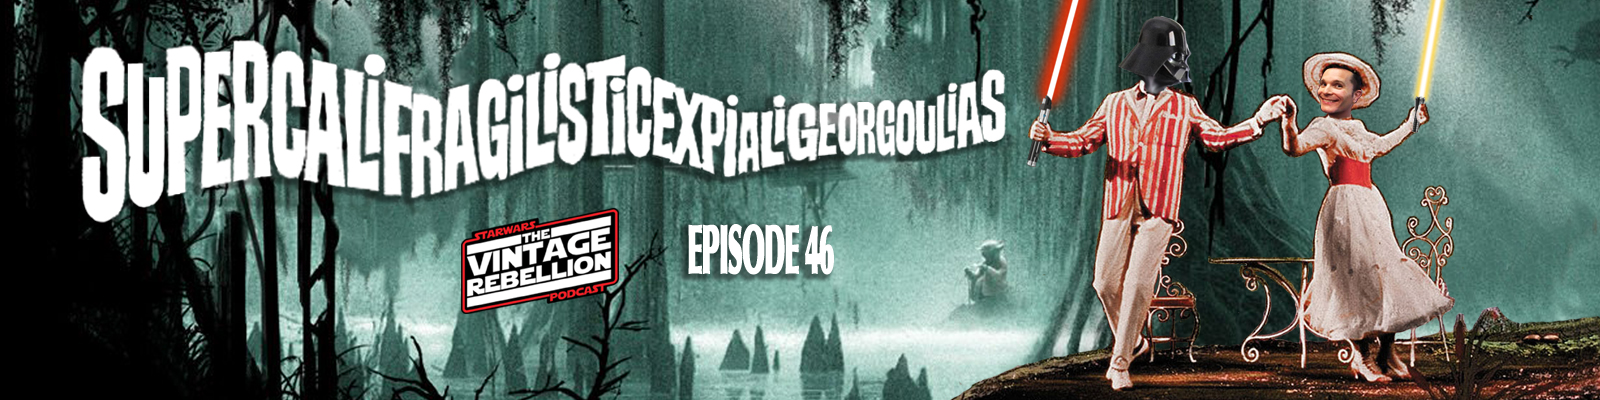 Episode 46 : SupercalifragilisticexpialiGeorgoulias